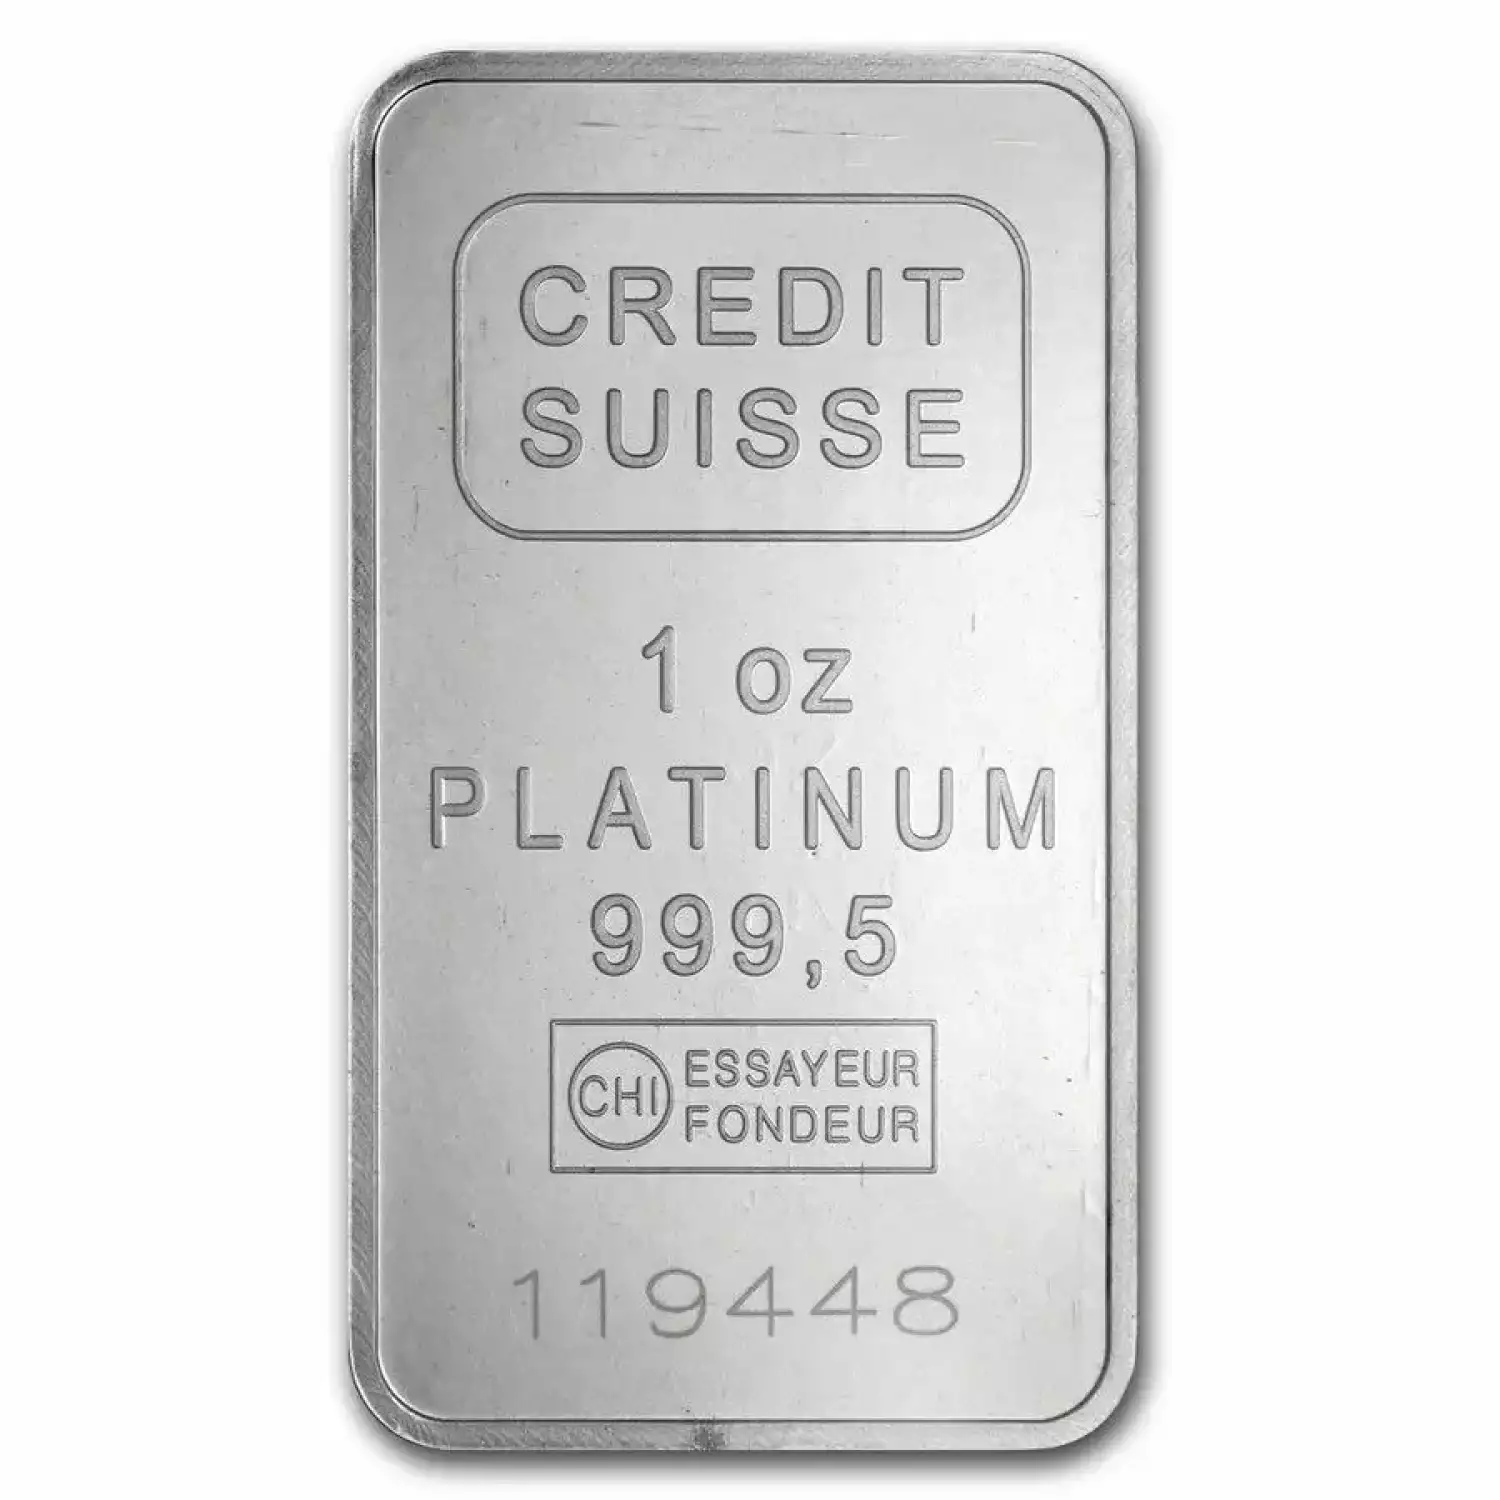 1oz Credit Suisse Platinum Bar